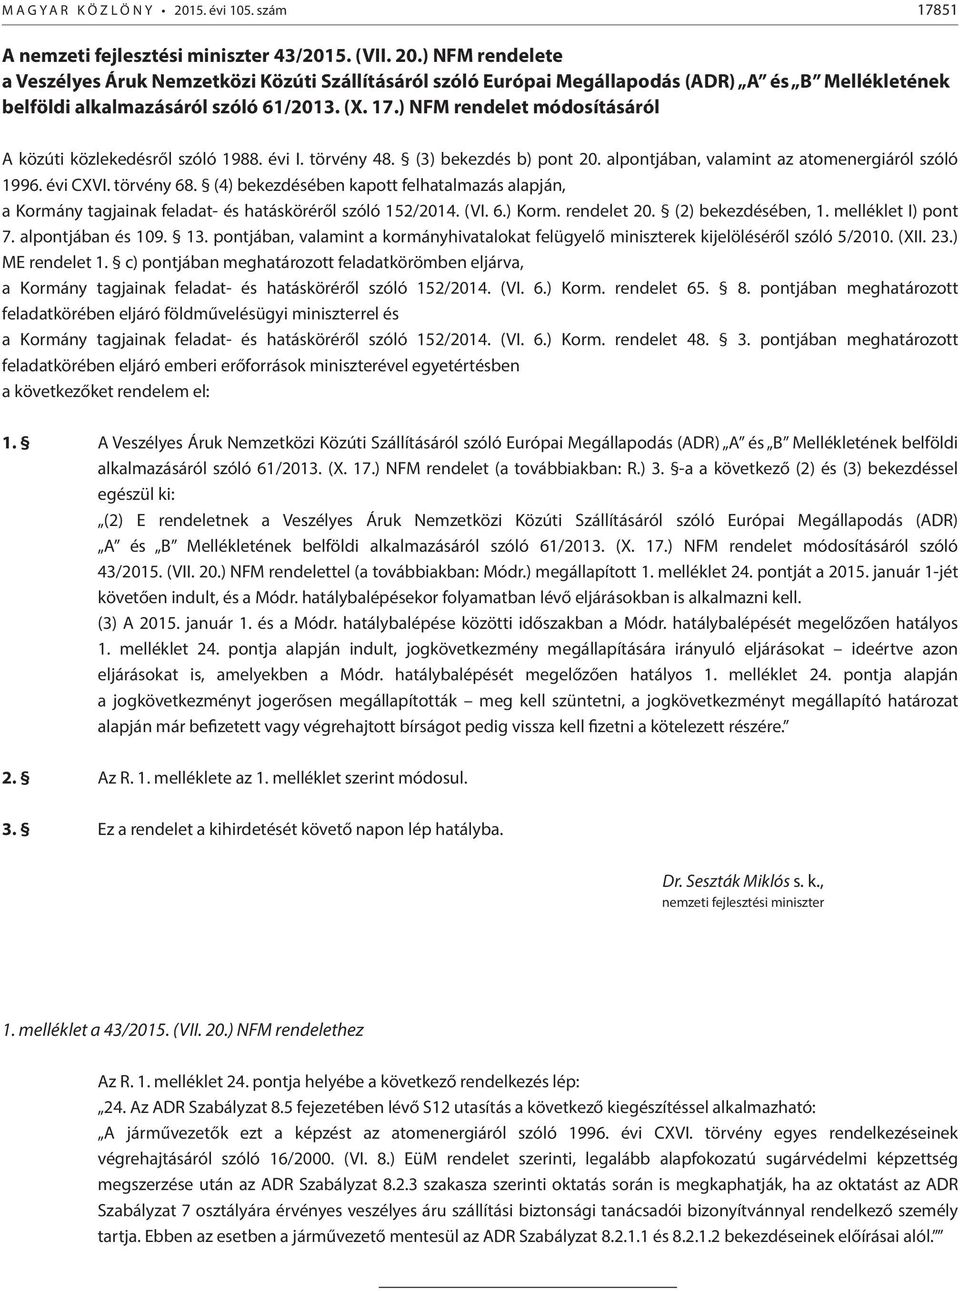 (4) bekezdésében kapott felhatalmazás alapján, a Kormány tagjainak feladat- és hatásköréről szóló 152/2014. (VI. 6.) Korm. rendelet 20. (2) bekezdésében, 1. melléklet I) pont 7. alpontjában és 109.